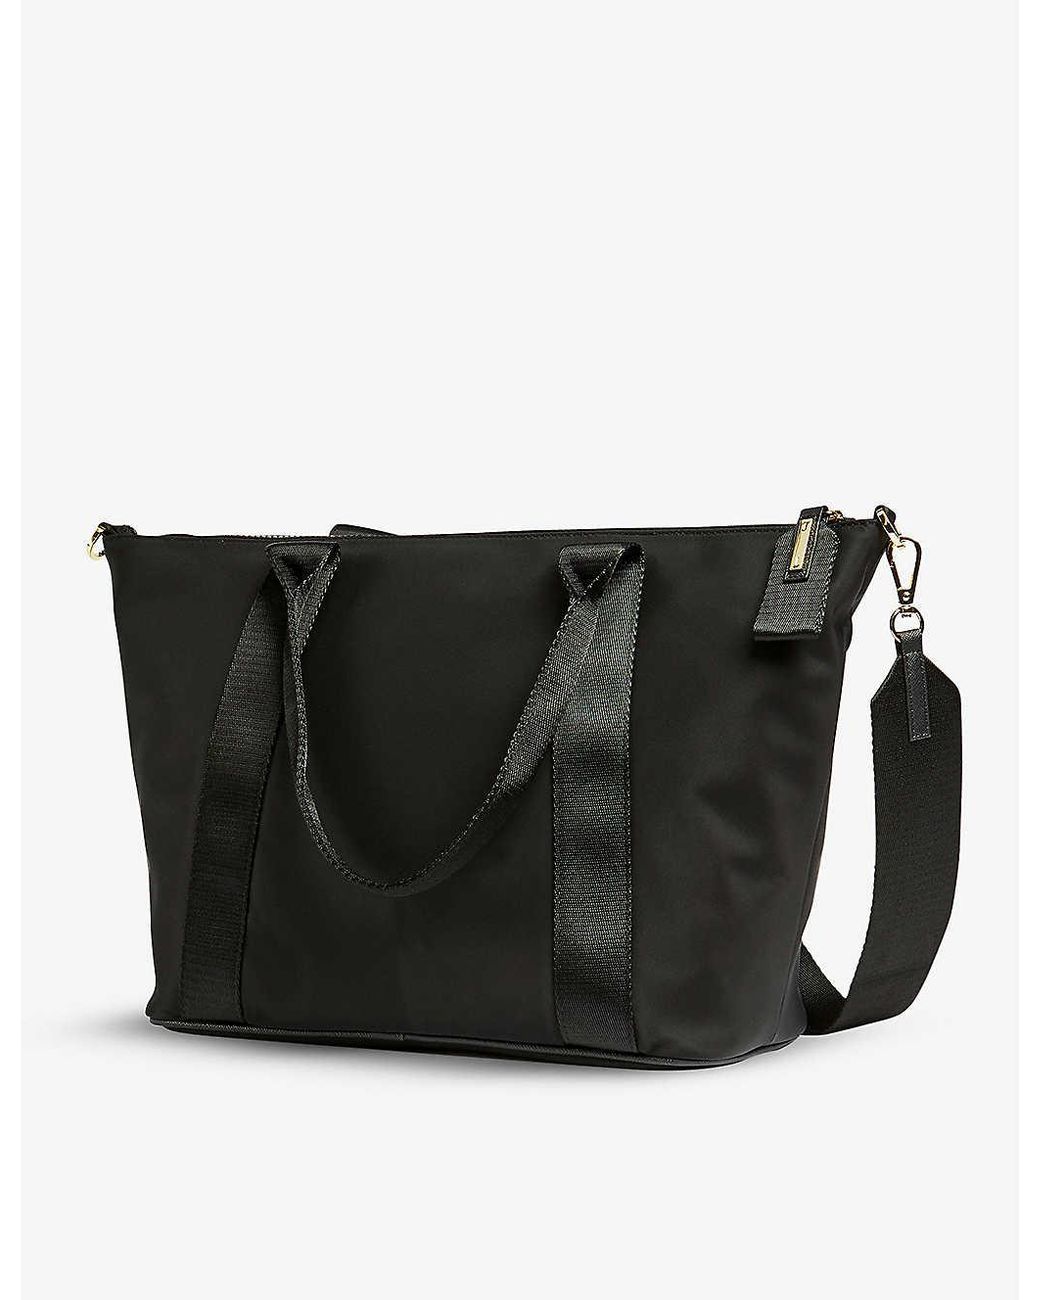 Ted Baker Women's Black Floral Nylon Shopper Bag. Brand new